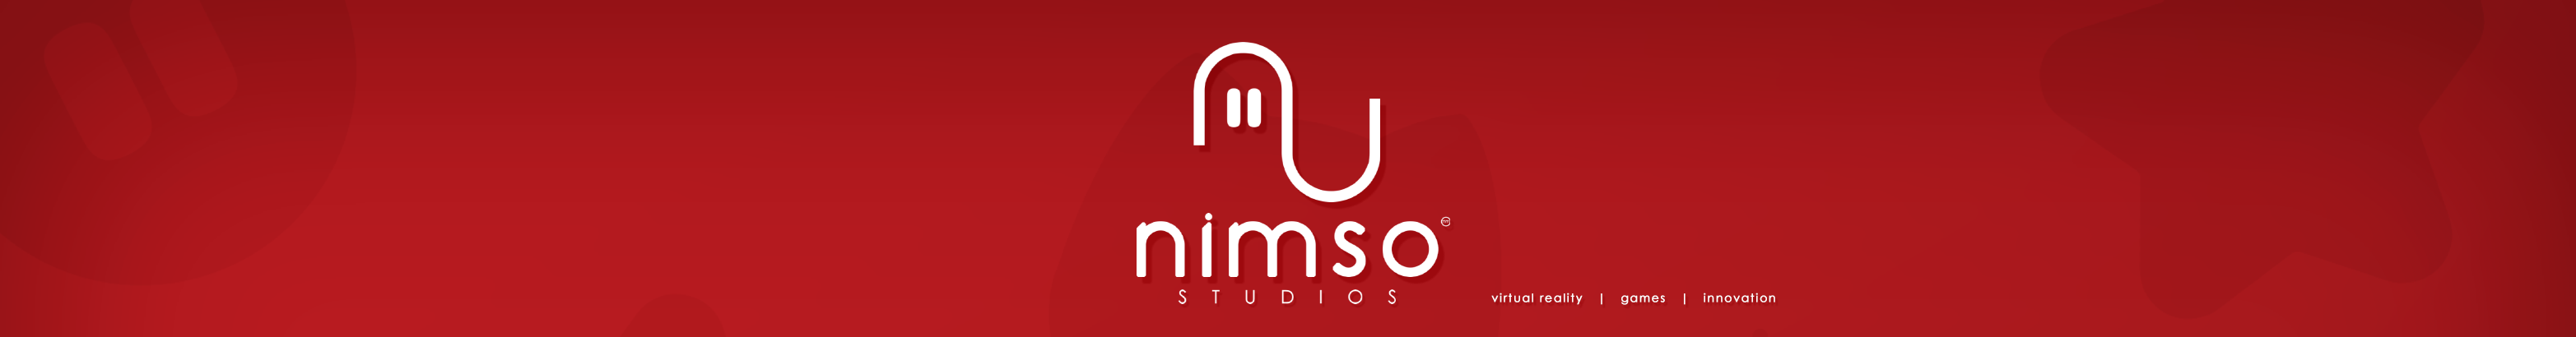 Nimso Studioss profilbanner